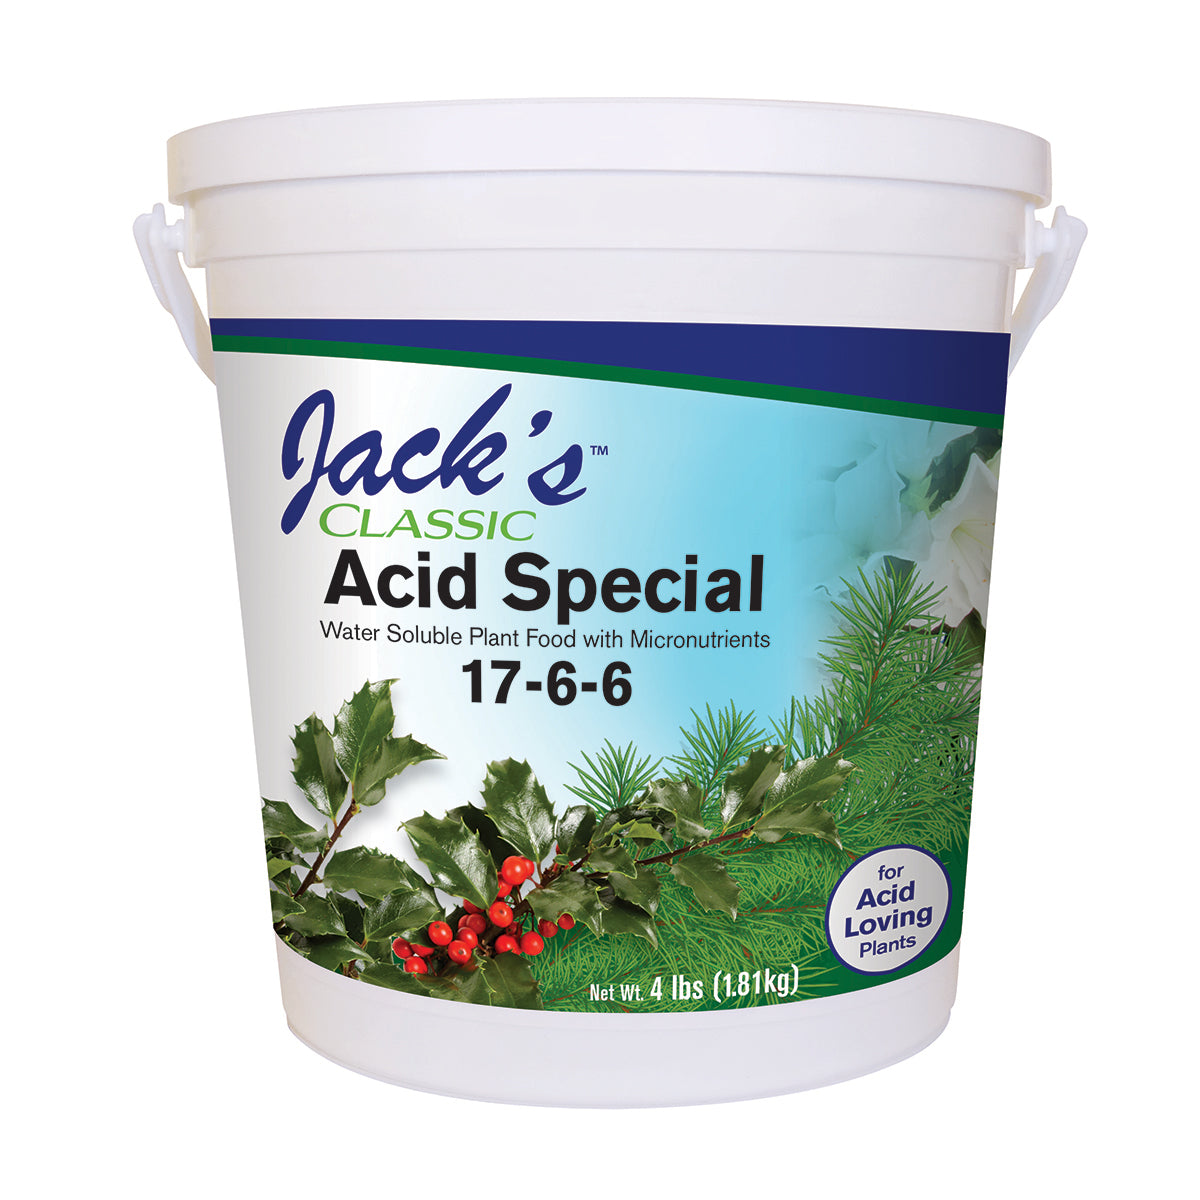 Product Secondary Image:Jack's Acide Spécial Classique 17-6-6